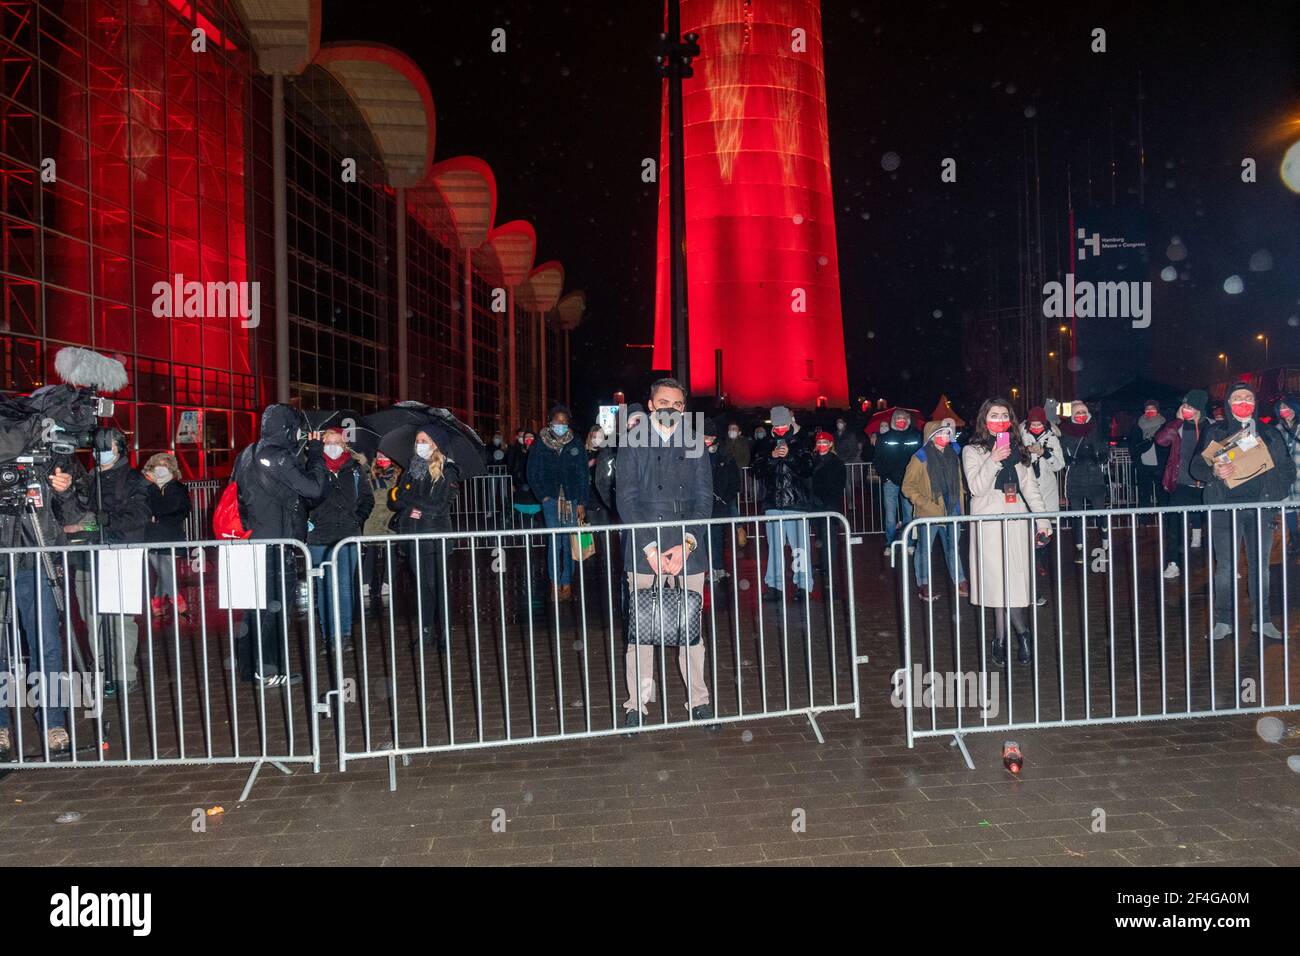 Alarmstufe Rot, Alster in Flammen, Liebe Politik - es reicht!, Amburgo, Messeplatz 1, Heinrich-Hertz-Funkturm, 20.03.2021 Foto Stock